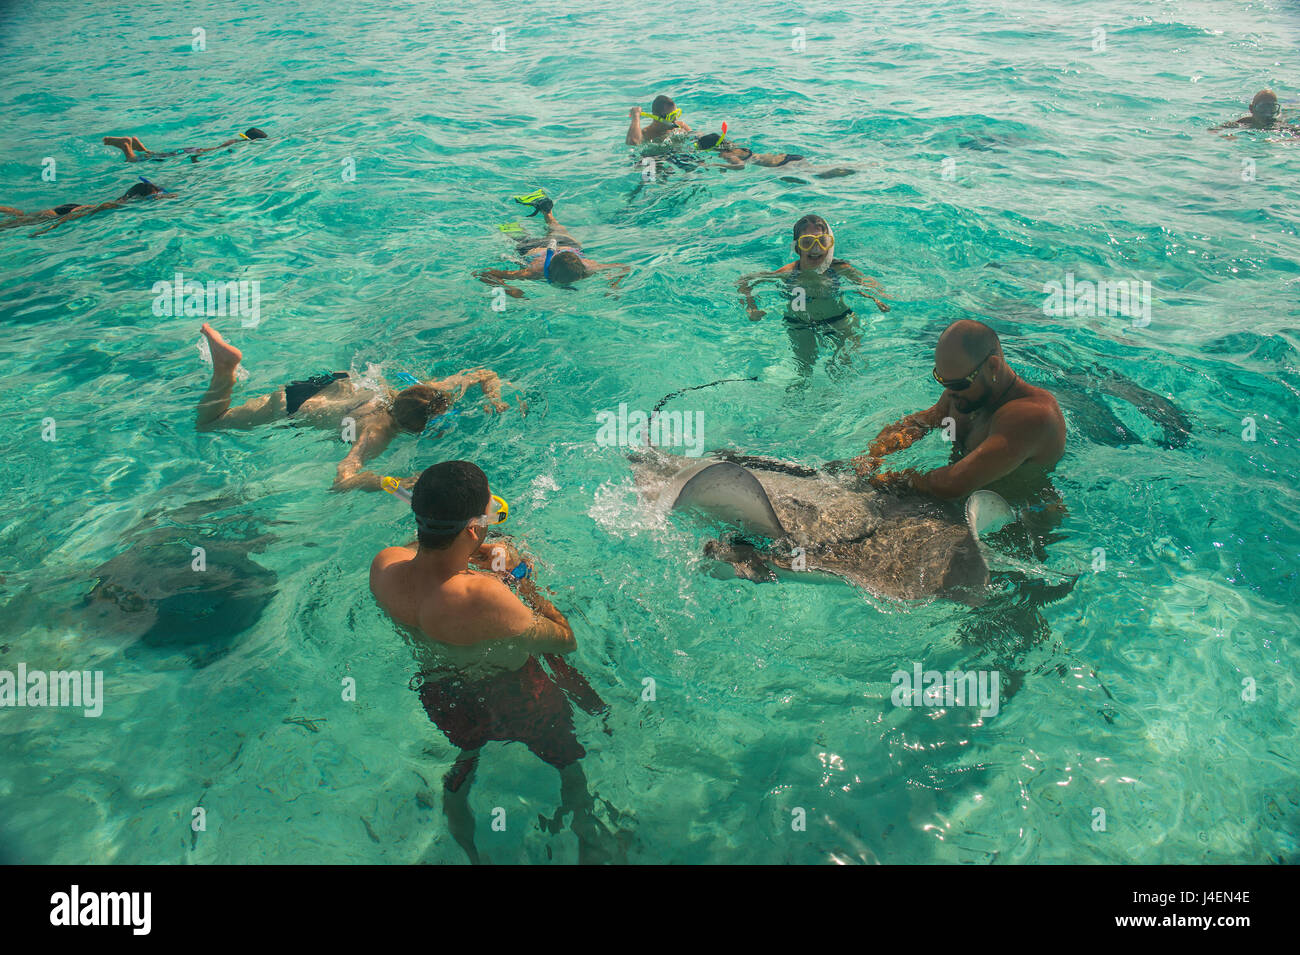 Los turistas nadar con rayas, Bora Bora, Islas Sociedad, Polinesia Francesa, el Pacífico Foto de stock